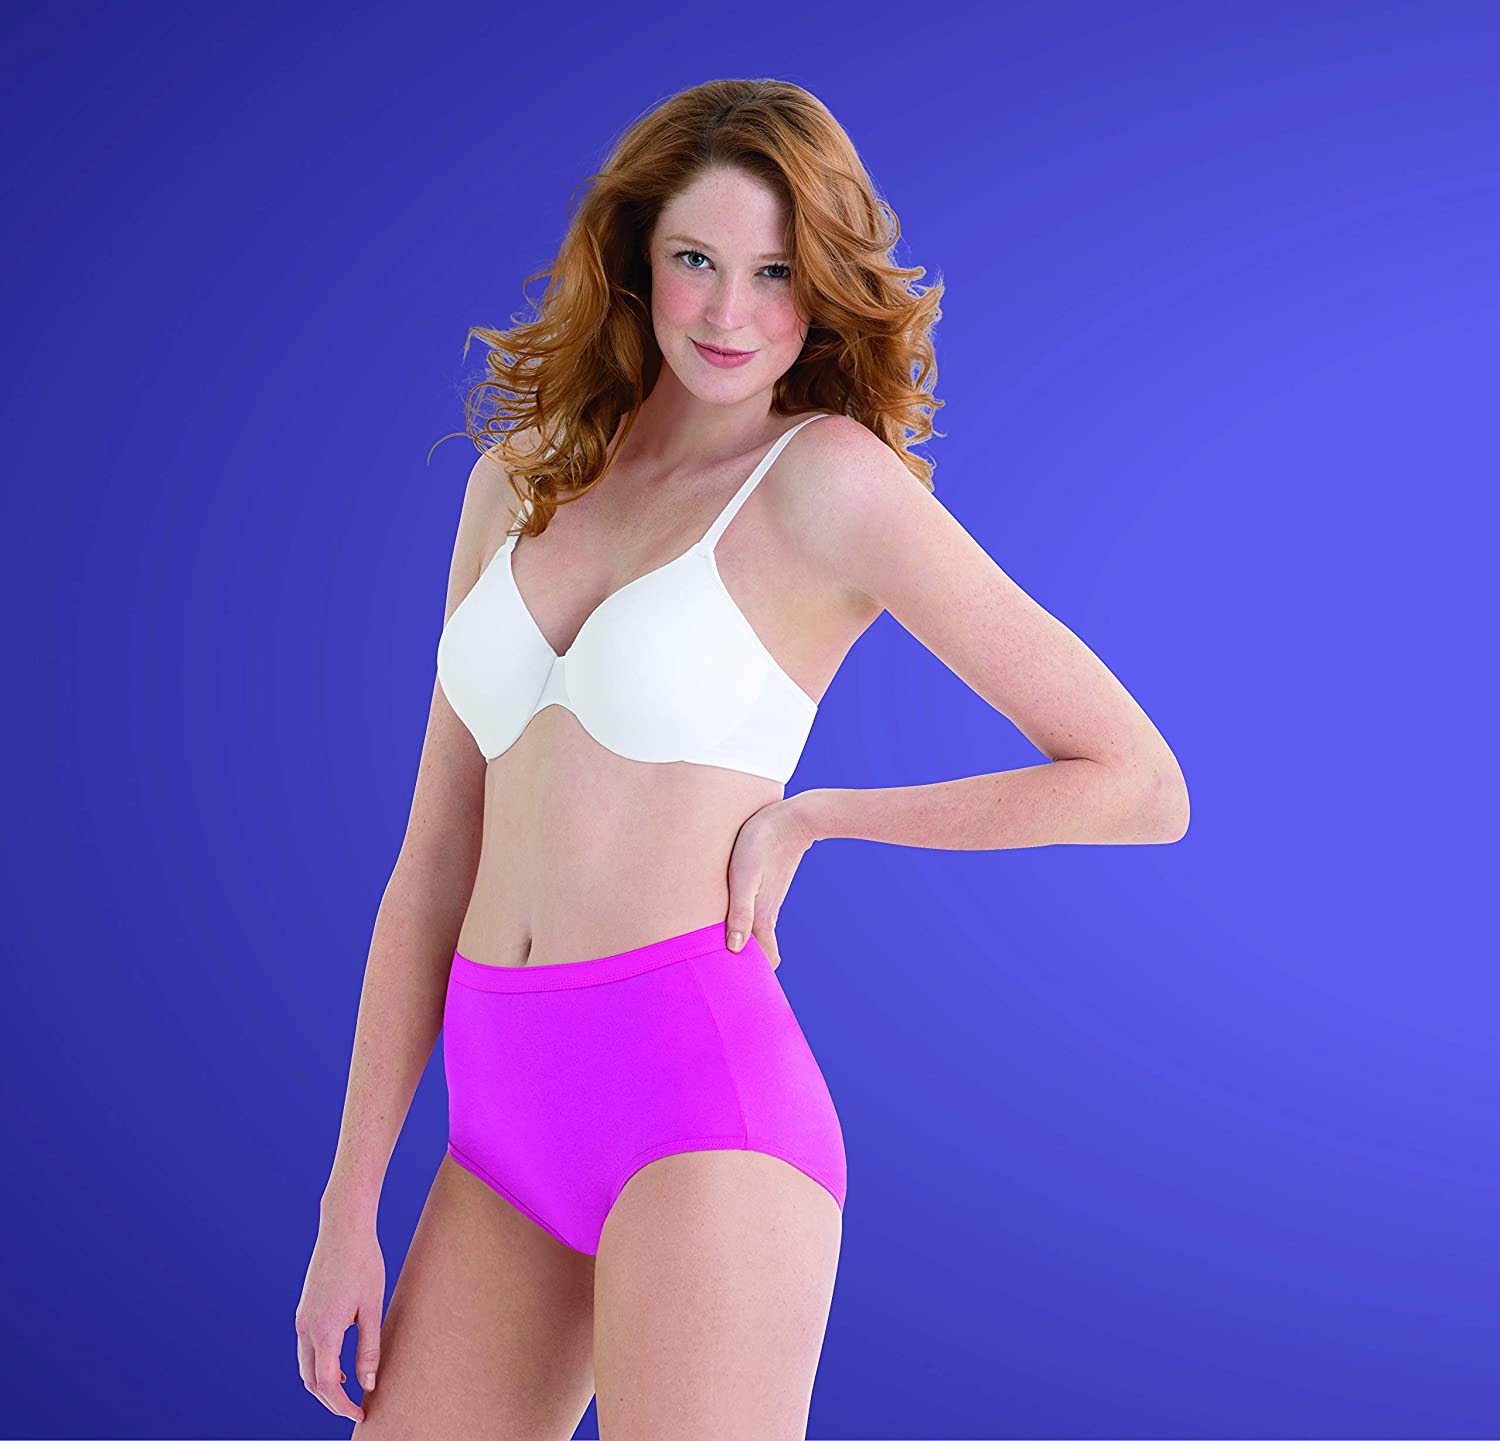 Hanes Women's Cool Comfort Cotton Brief Underwear, 6-Pack 